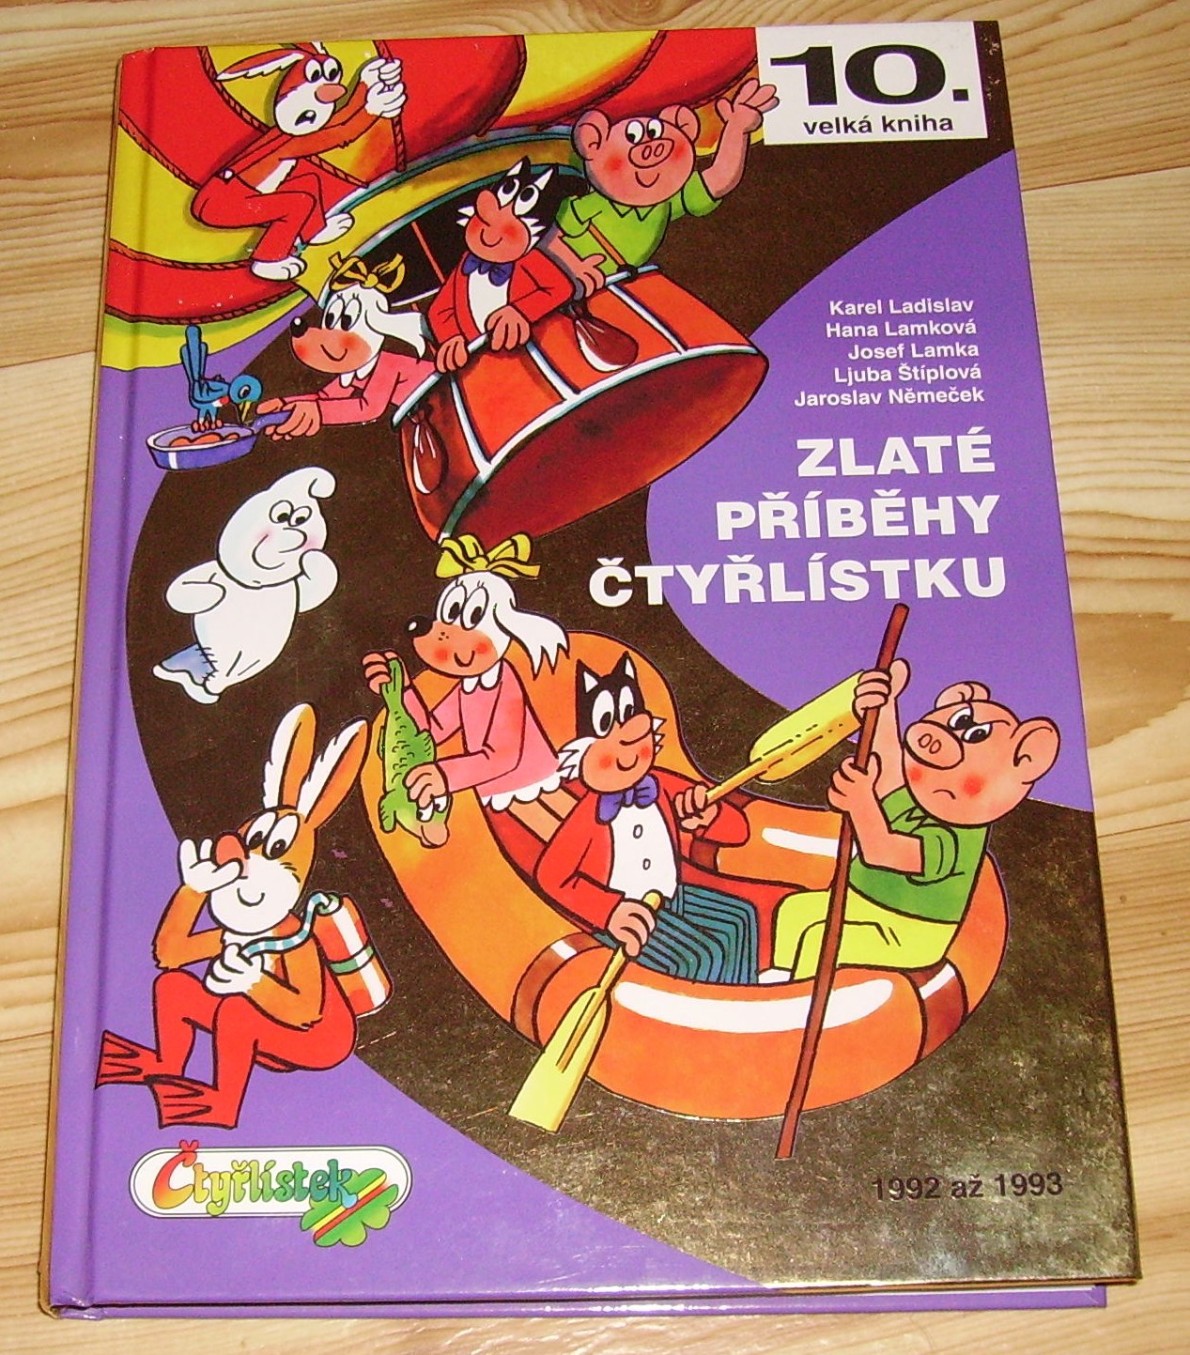 Velká kniha Čtyřlístku #10: Zlaté příběhy Čtyřlístku - 1992-1993